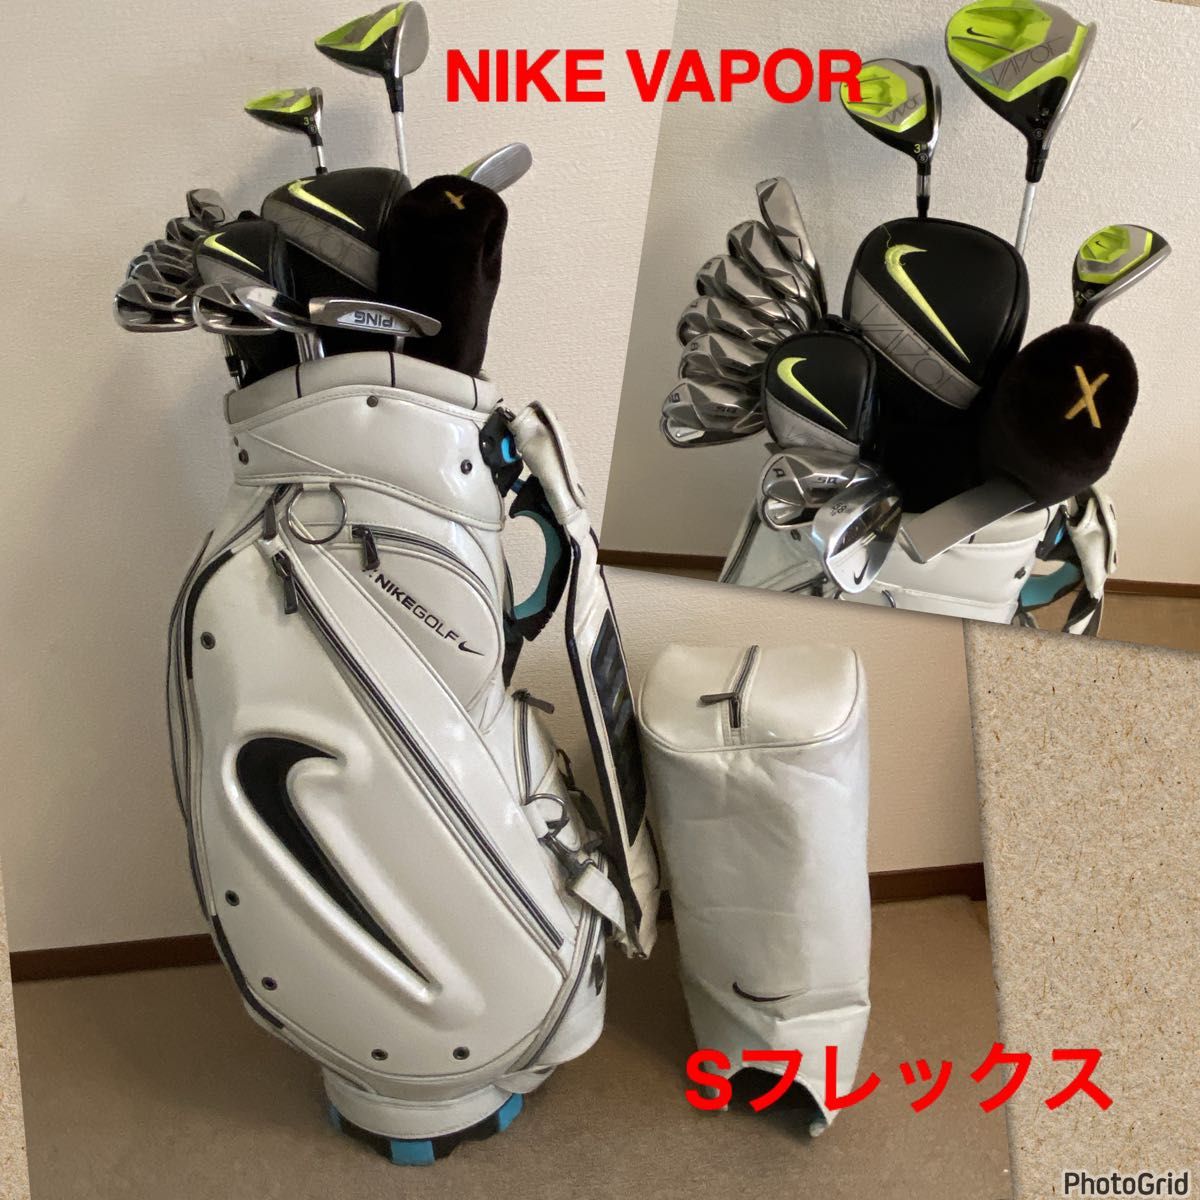 希少 【良品】ナイキ VAPOR ゴルフクラブセット/メンズ ゴルフセット